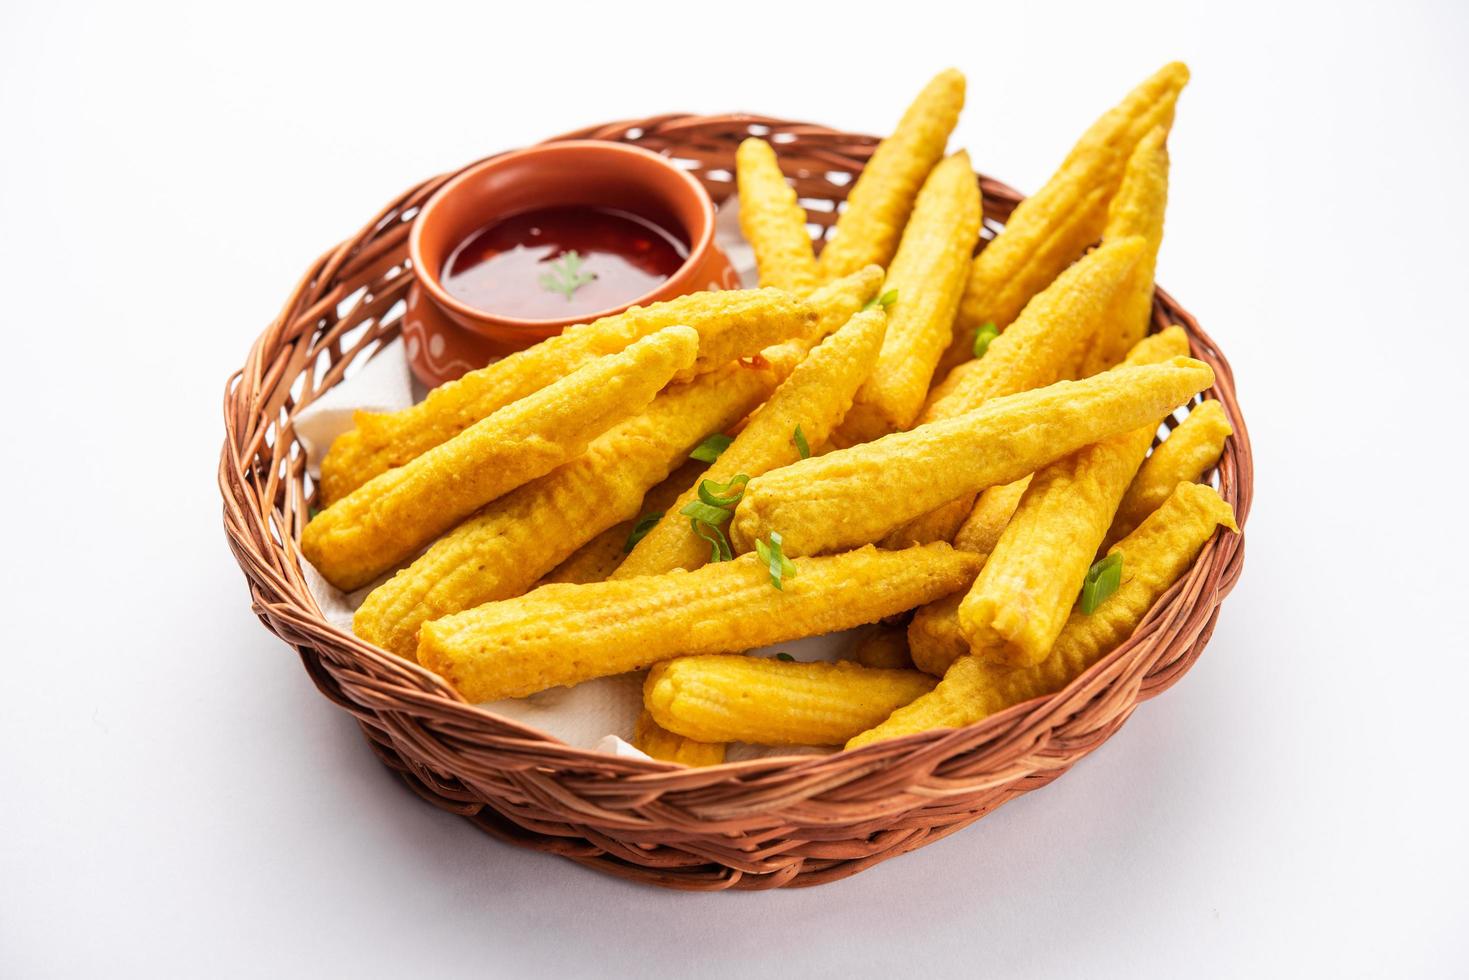 pakoda de milho frito crocante, pakora ou bolinhos de milho frito servidos com ketchup, comida indiana foto